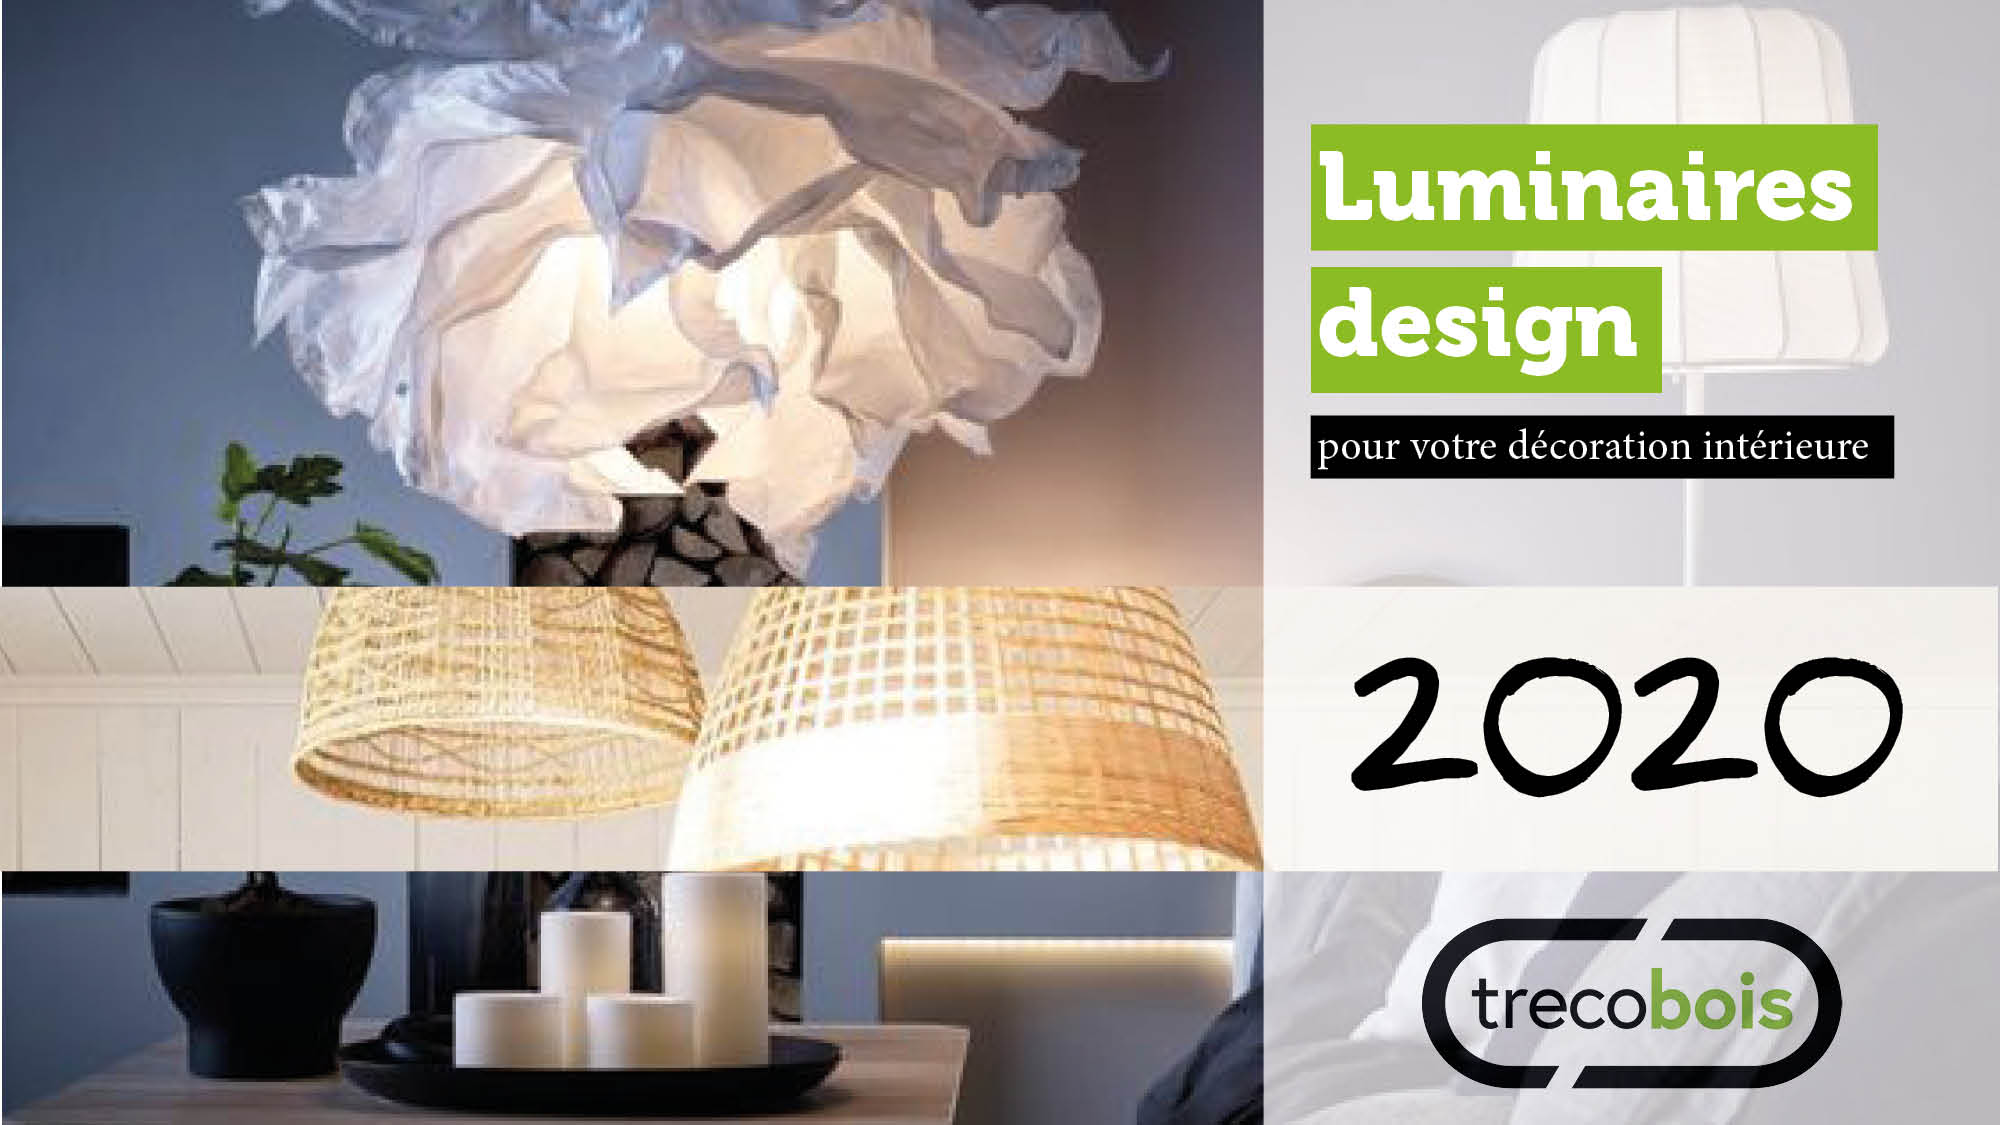 Les dernières tendances chez le luminaire design 2020-2021